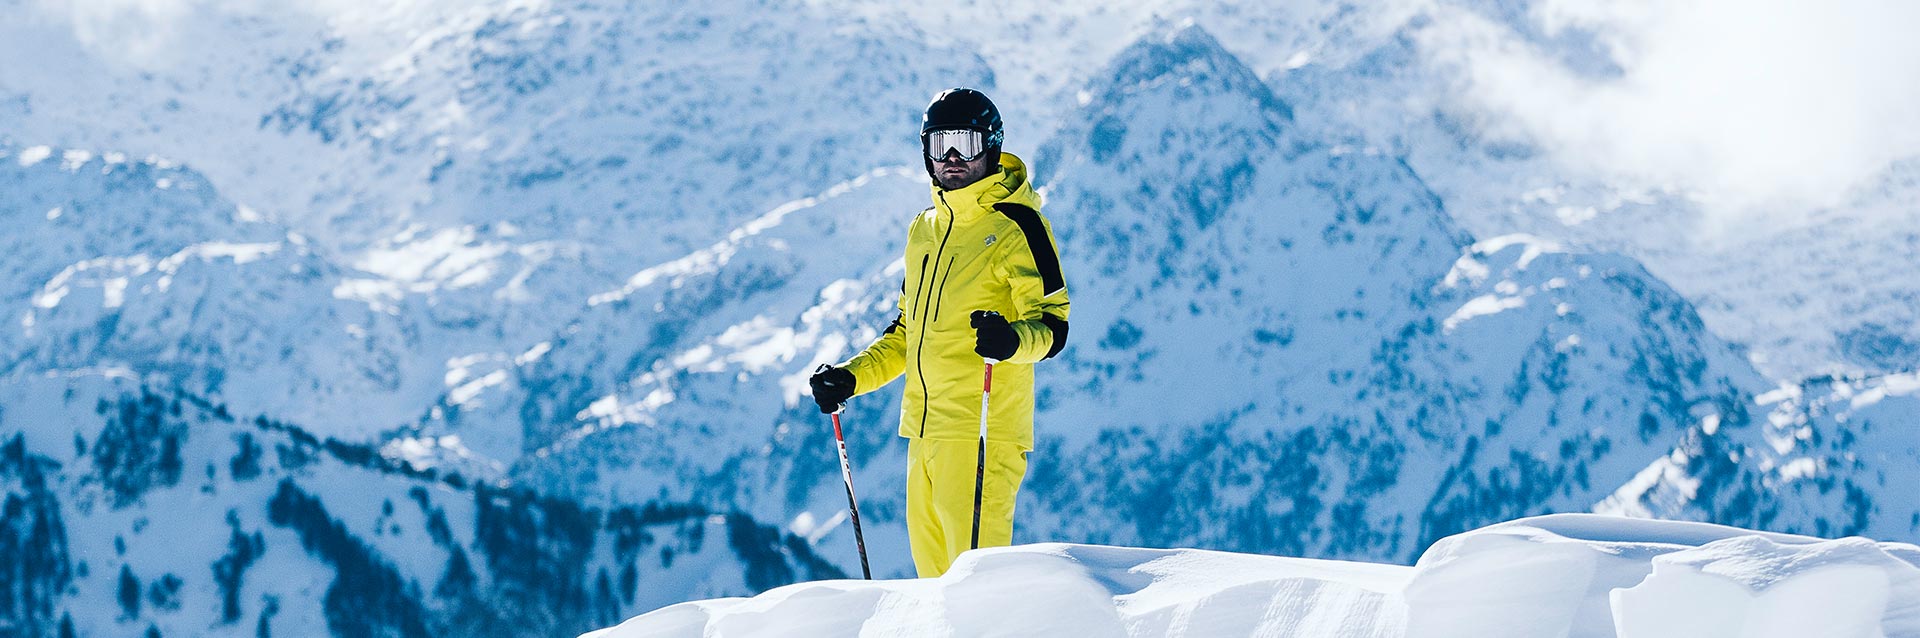 Veste et pantalon de ski - à quoi devez-vous faire attention?